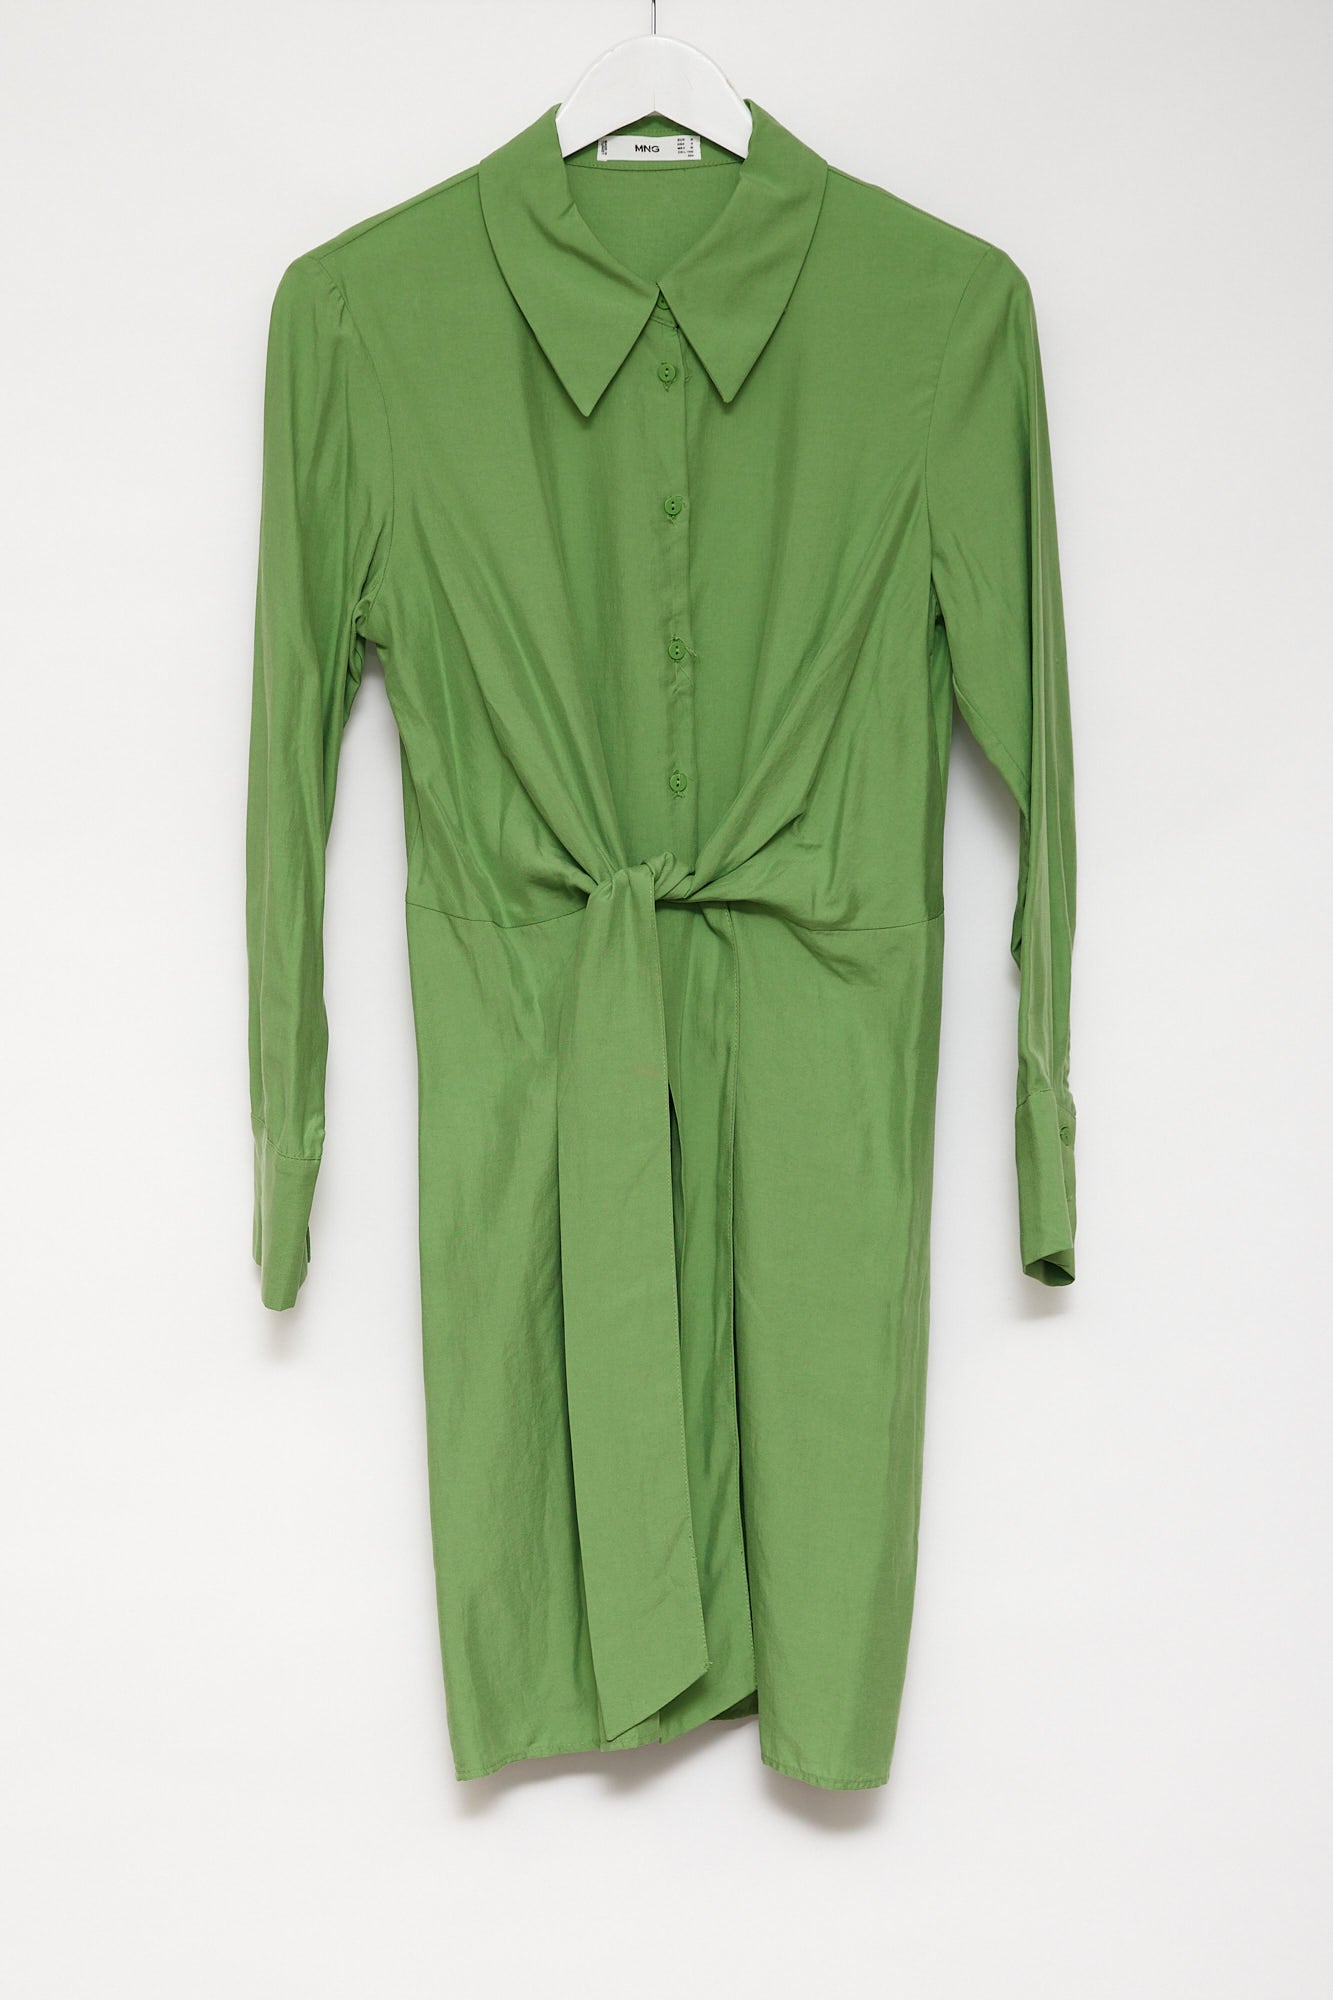 Womens Mango green shirt dress size medium